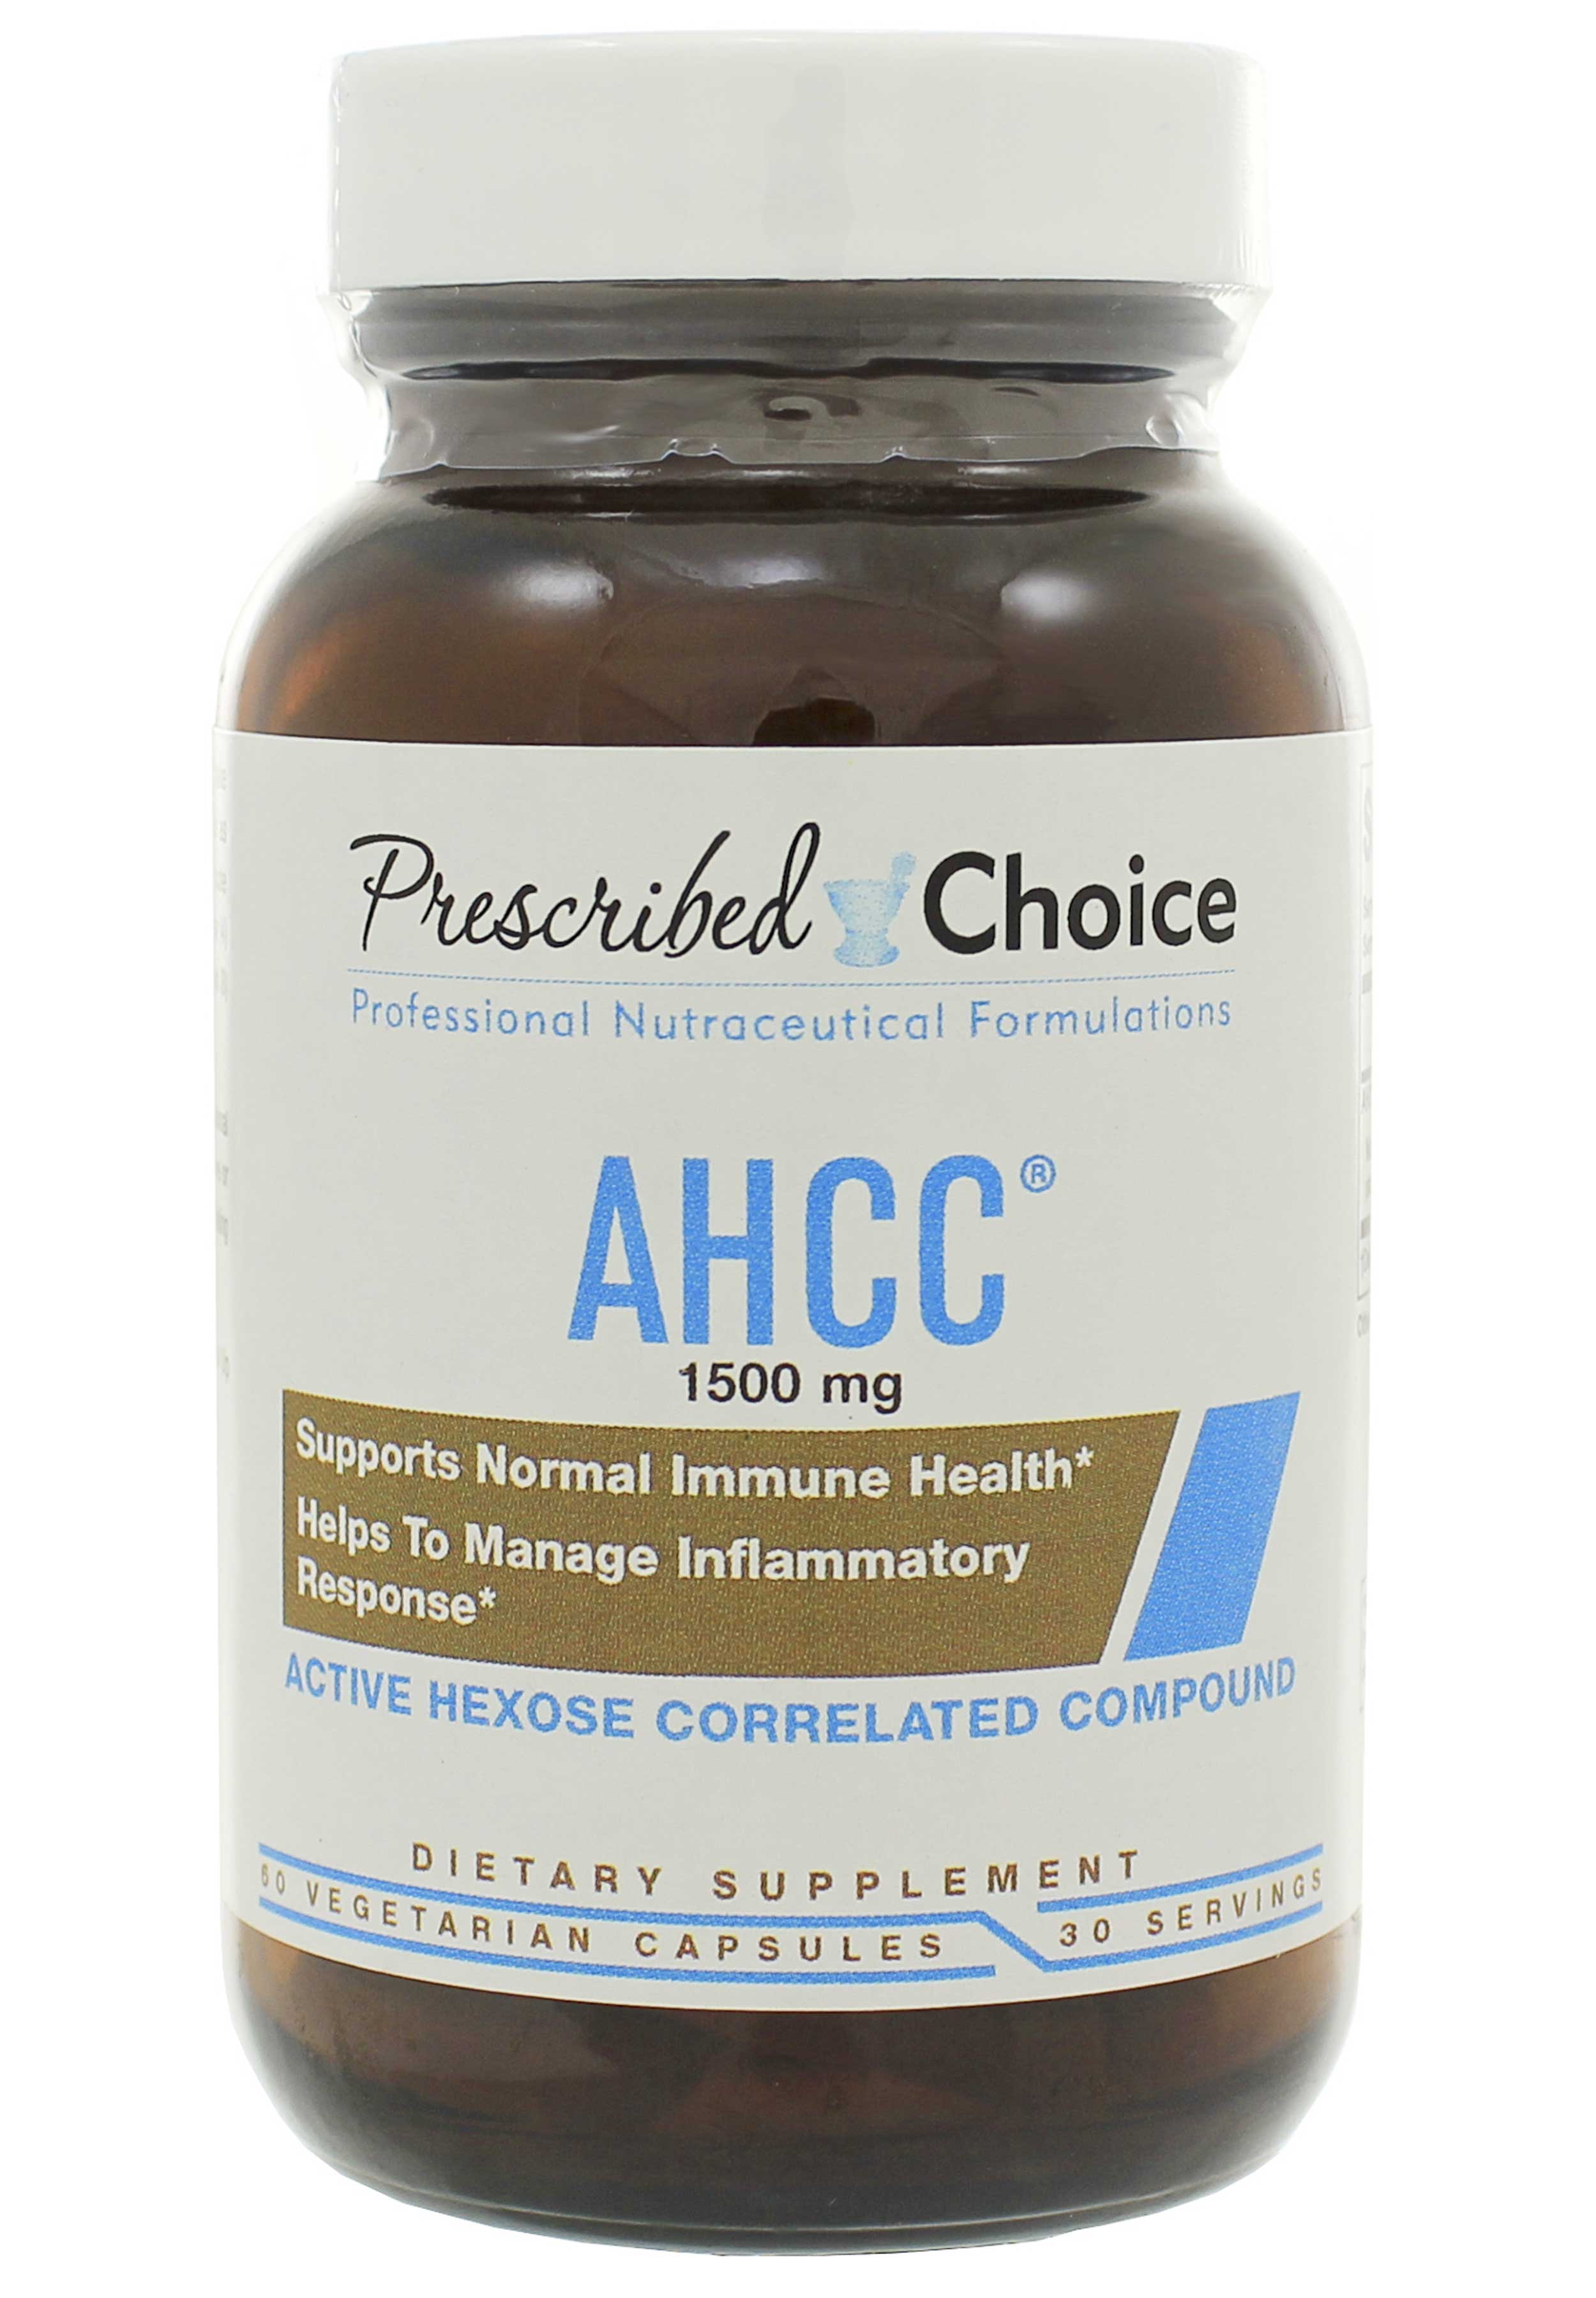 Prescribed Choice AHCC